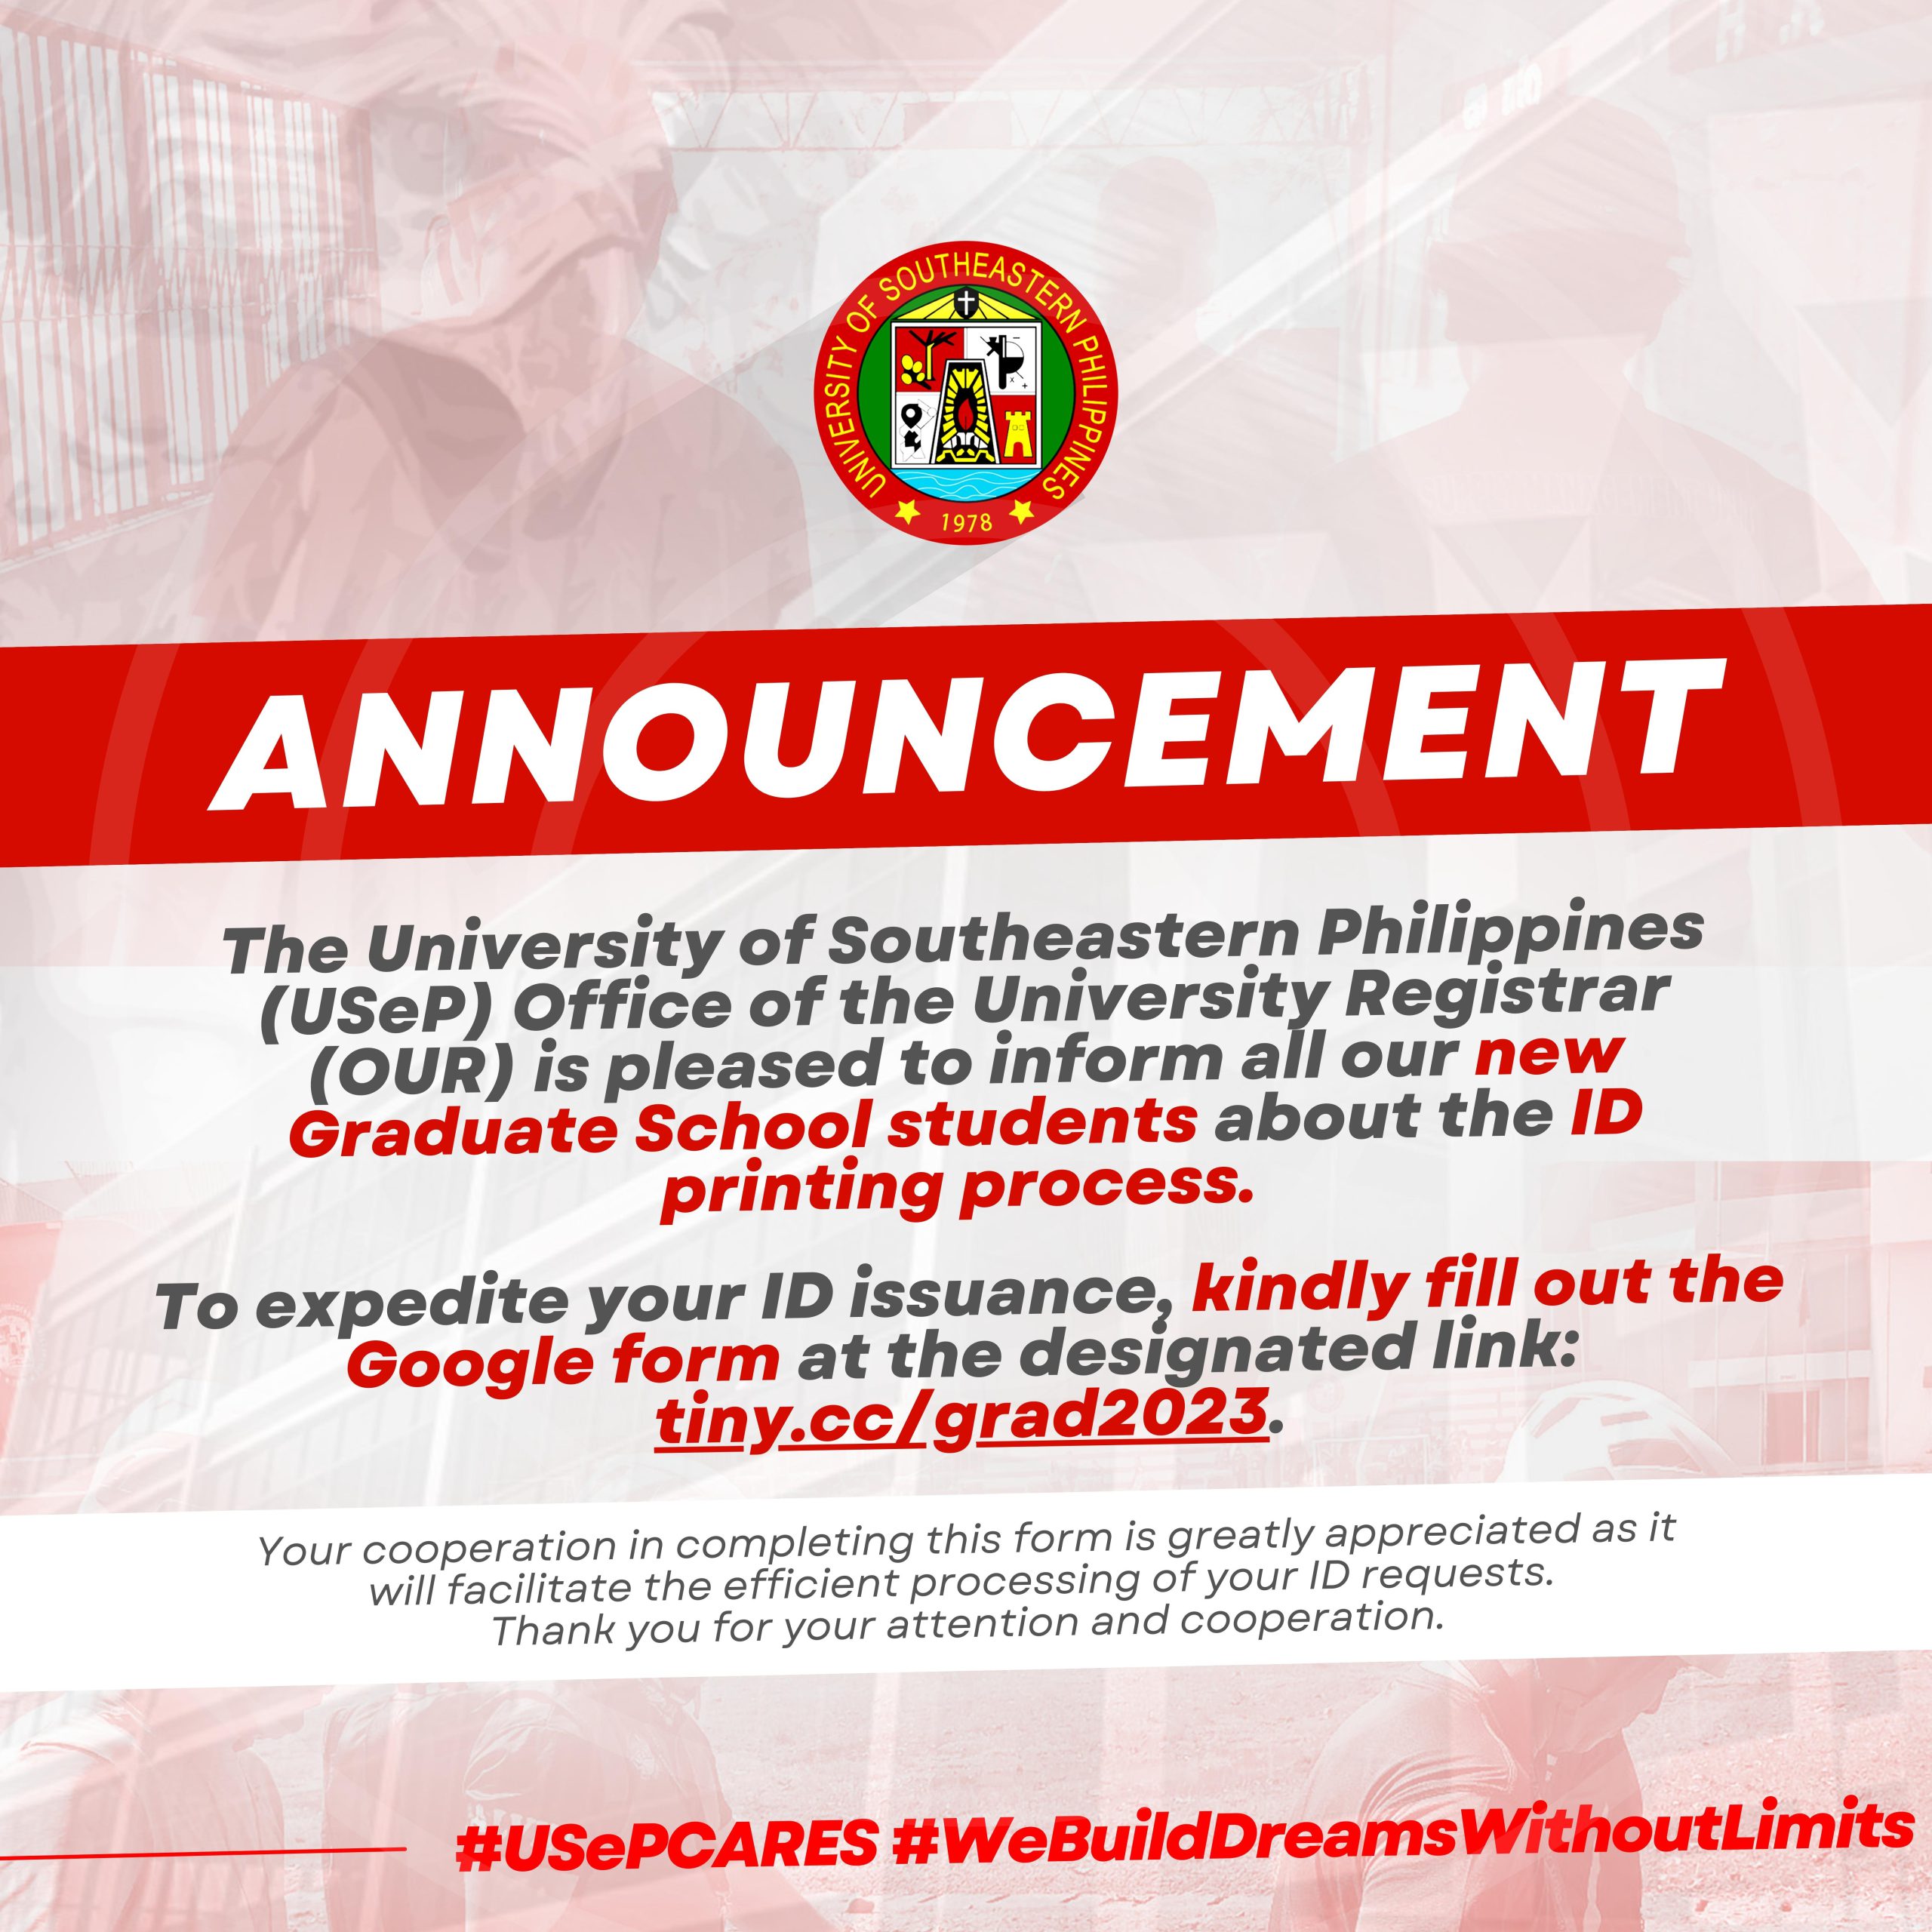 New Graduate School students ID printing process